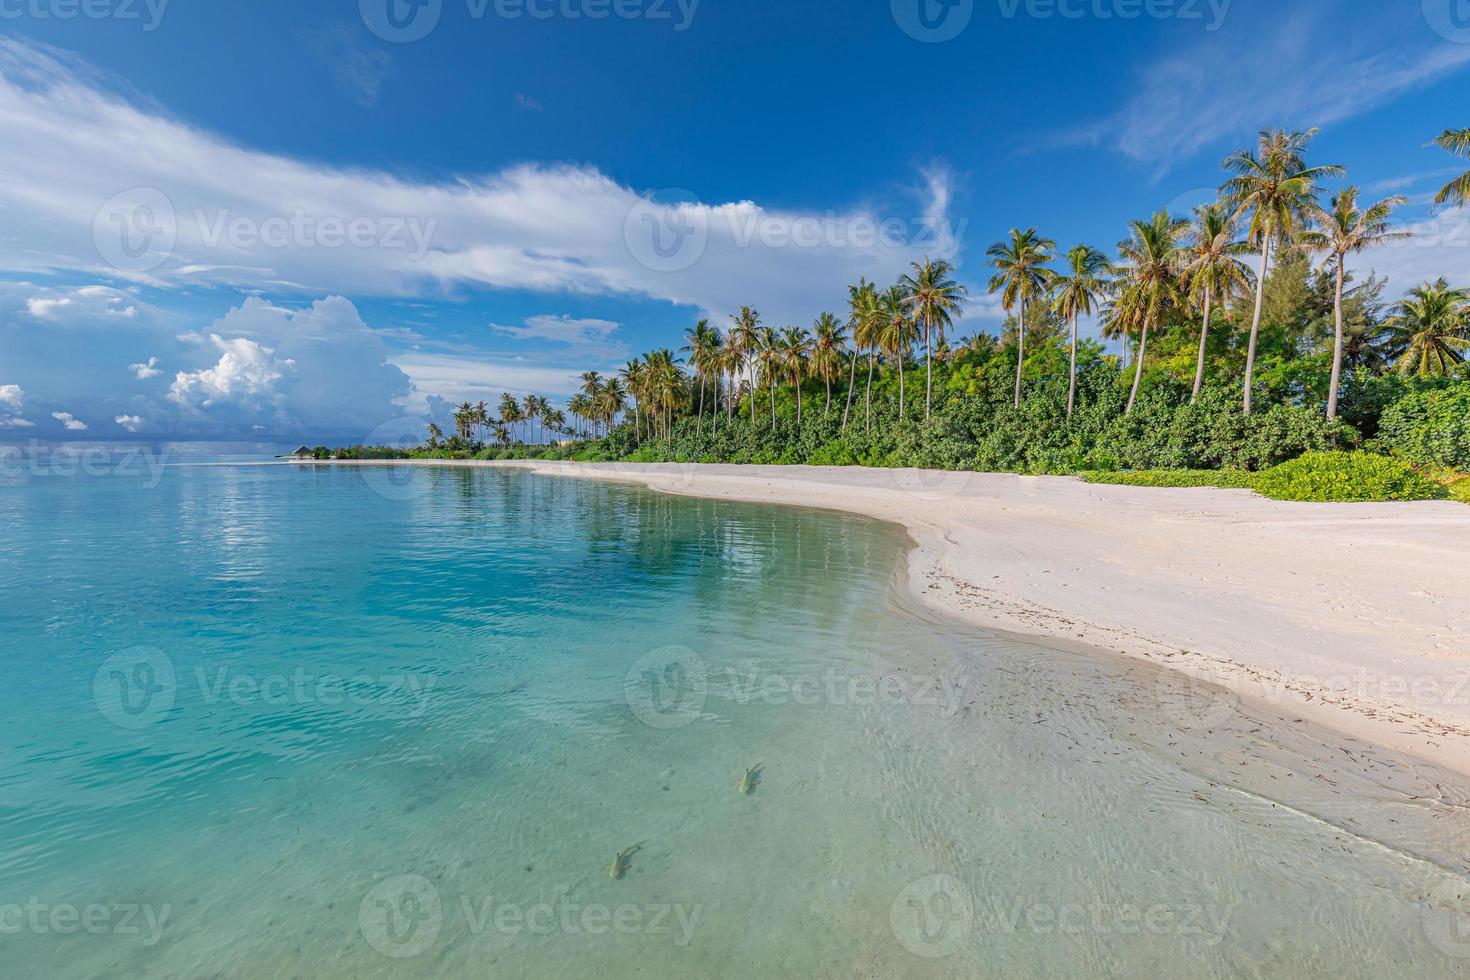 zomer reizen achtergrond. exotisch tropisch strand eiland, paradijs kust. palm bomen wit zand, verbazingwekkend lucht oceaan lagune. fantastisch mooi natuur panorama, zonnig dag idyllisch inspirerend vakantie foto